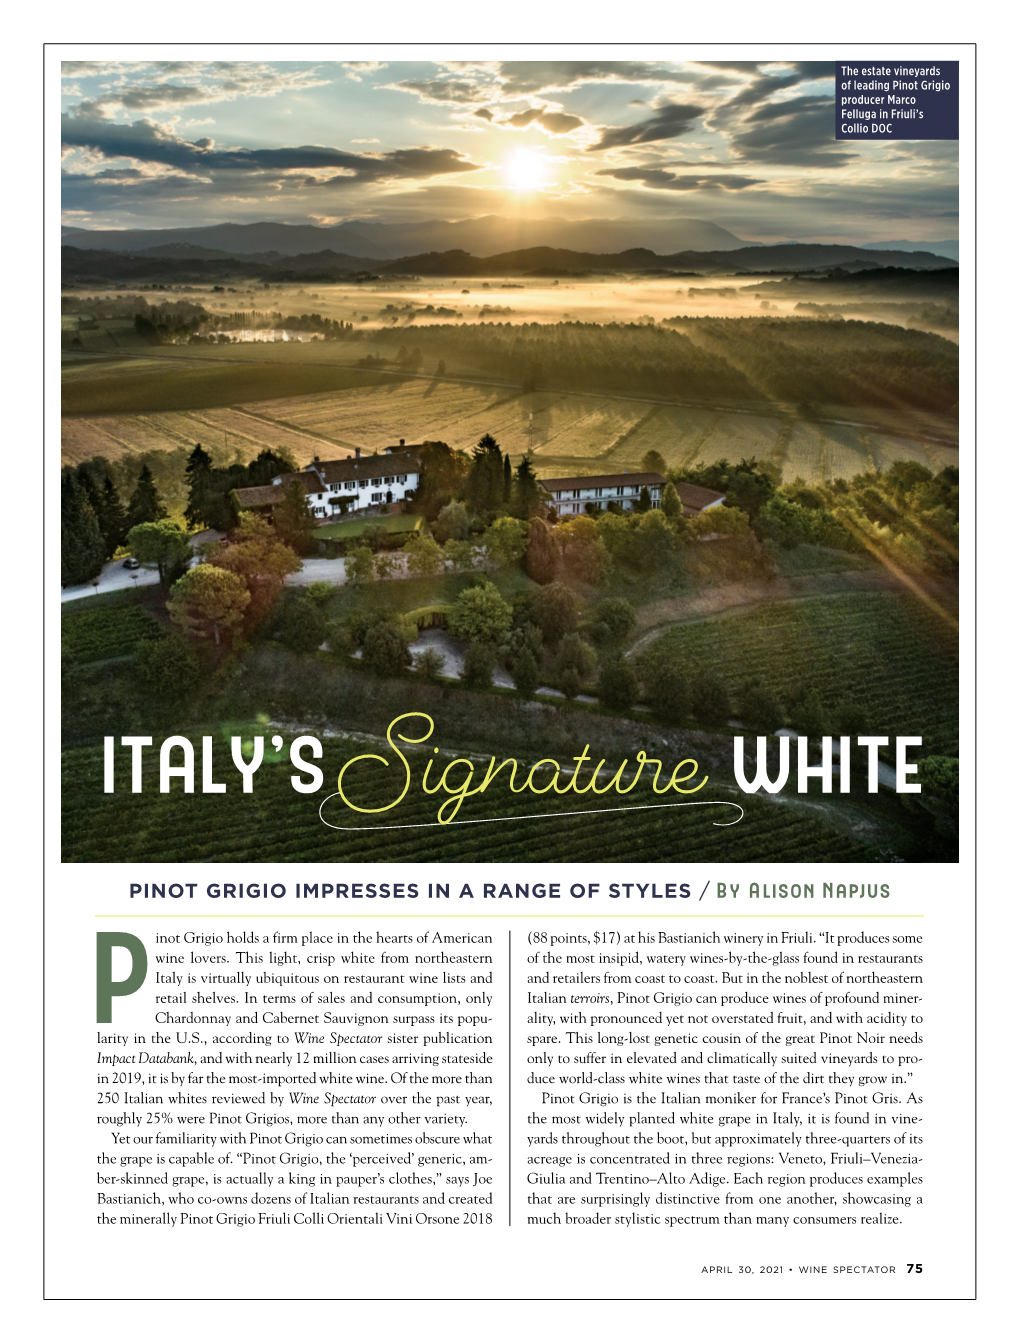 Italy's Signature White: Pinot Grigio Impresses